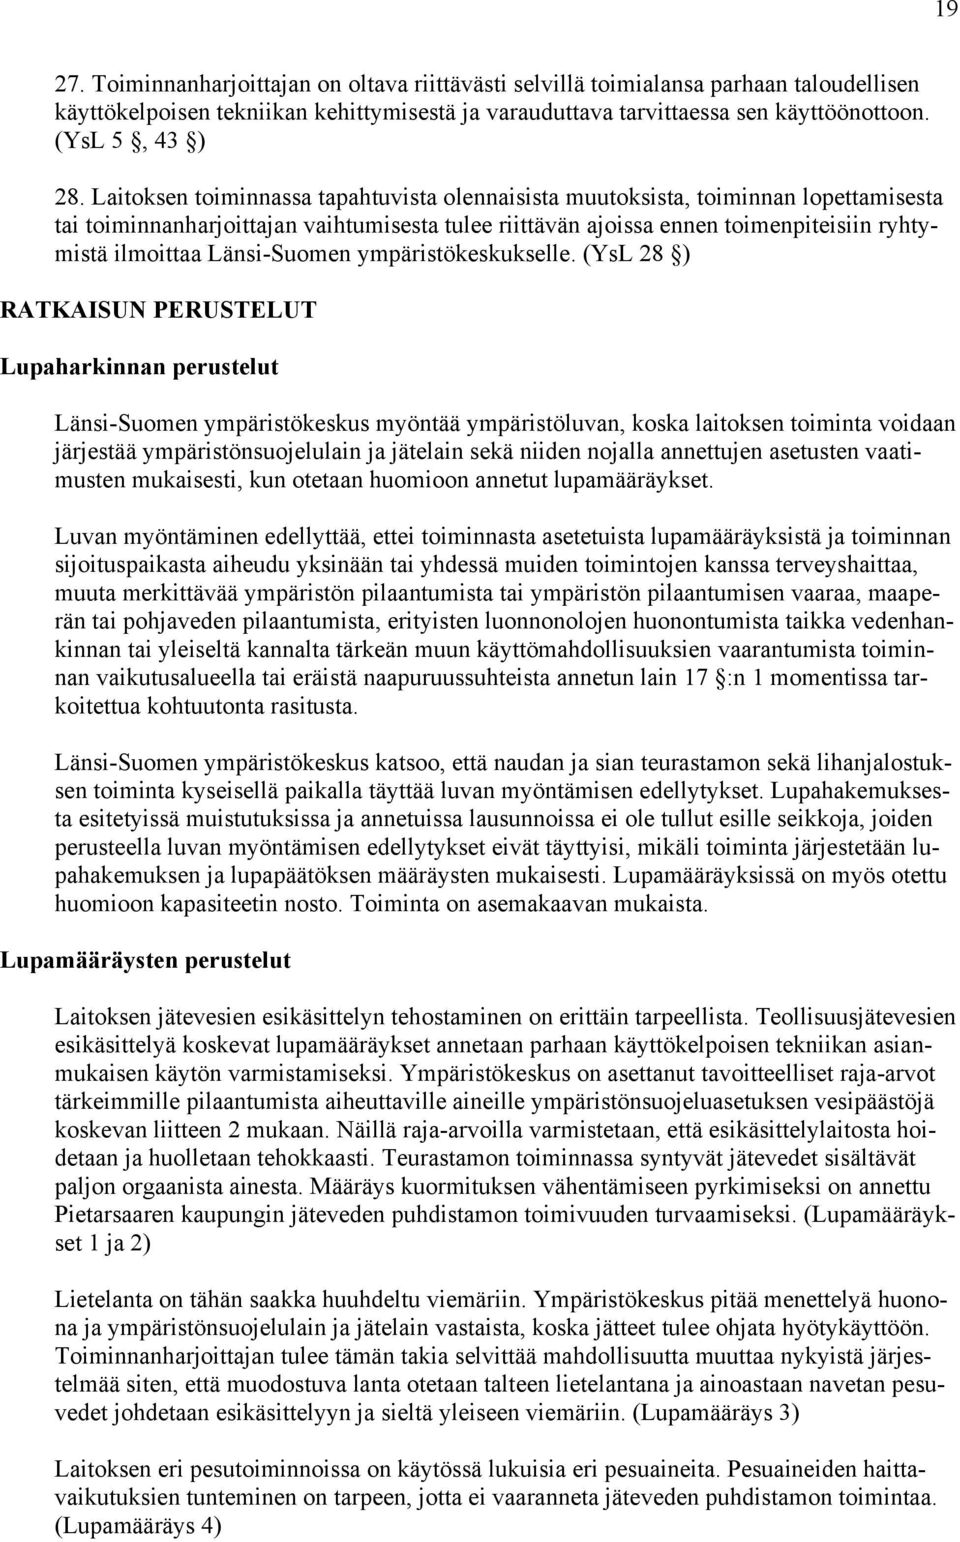 Länsi-Suomen ympäristökeskukselle.